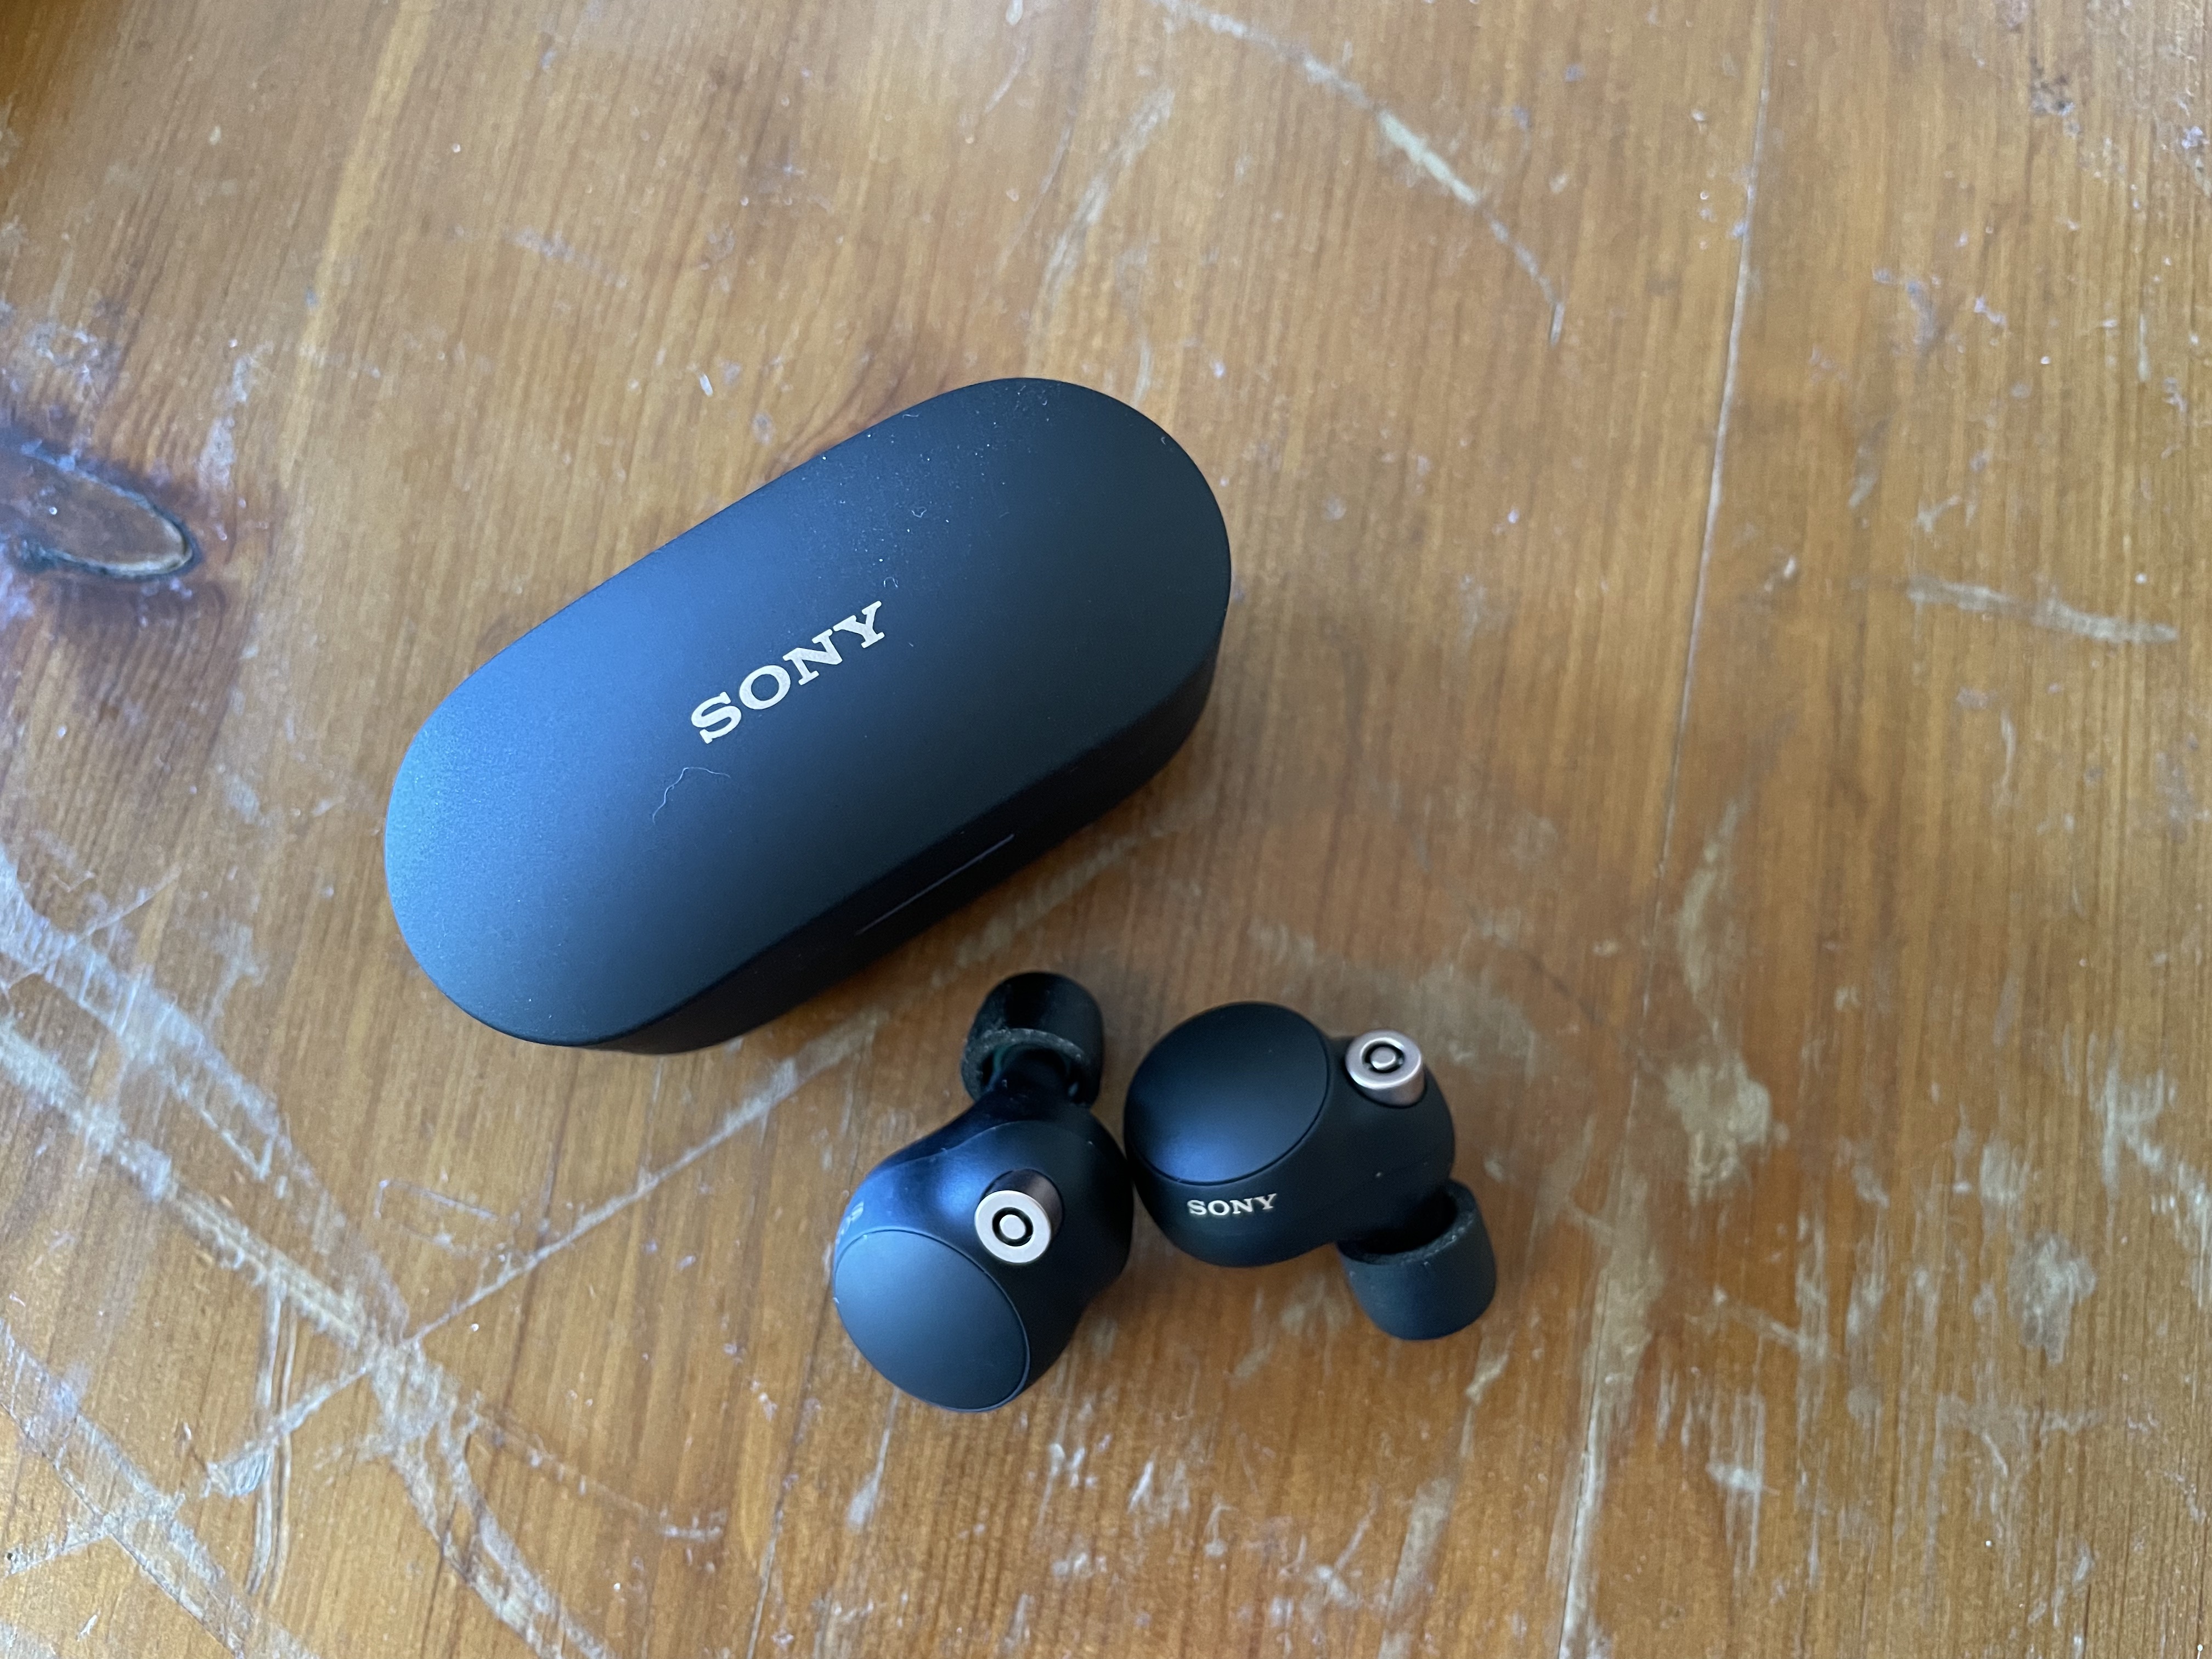 Sony WF-1000XM4 - True wireless earphones with mic - in-ear